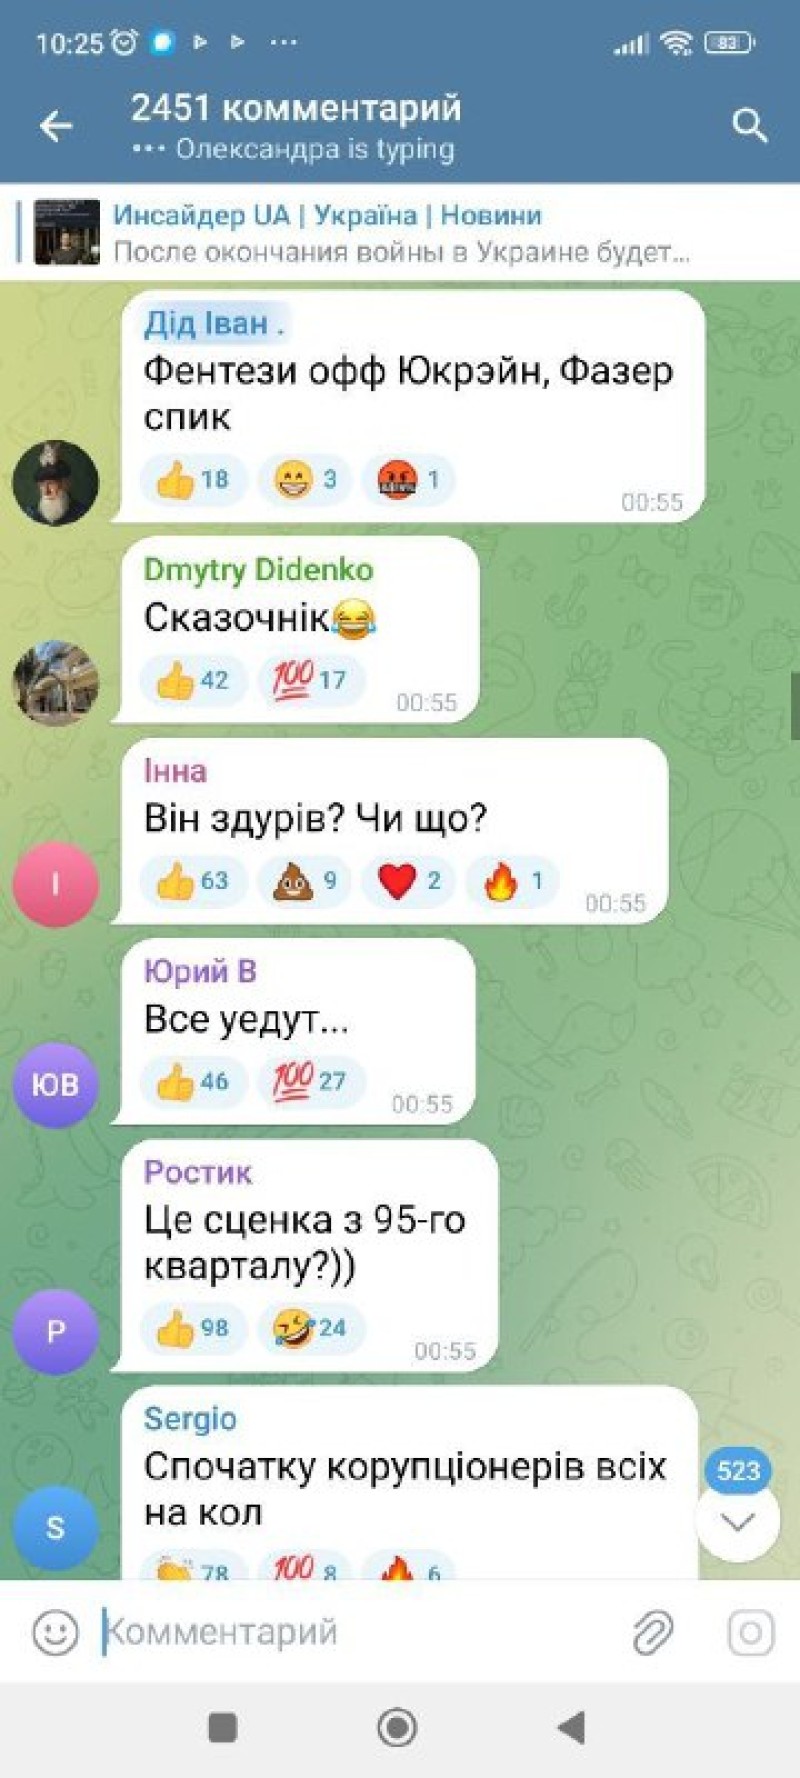 Реакция людей в Украинских группах на выступление Зеблана